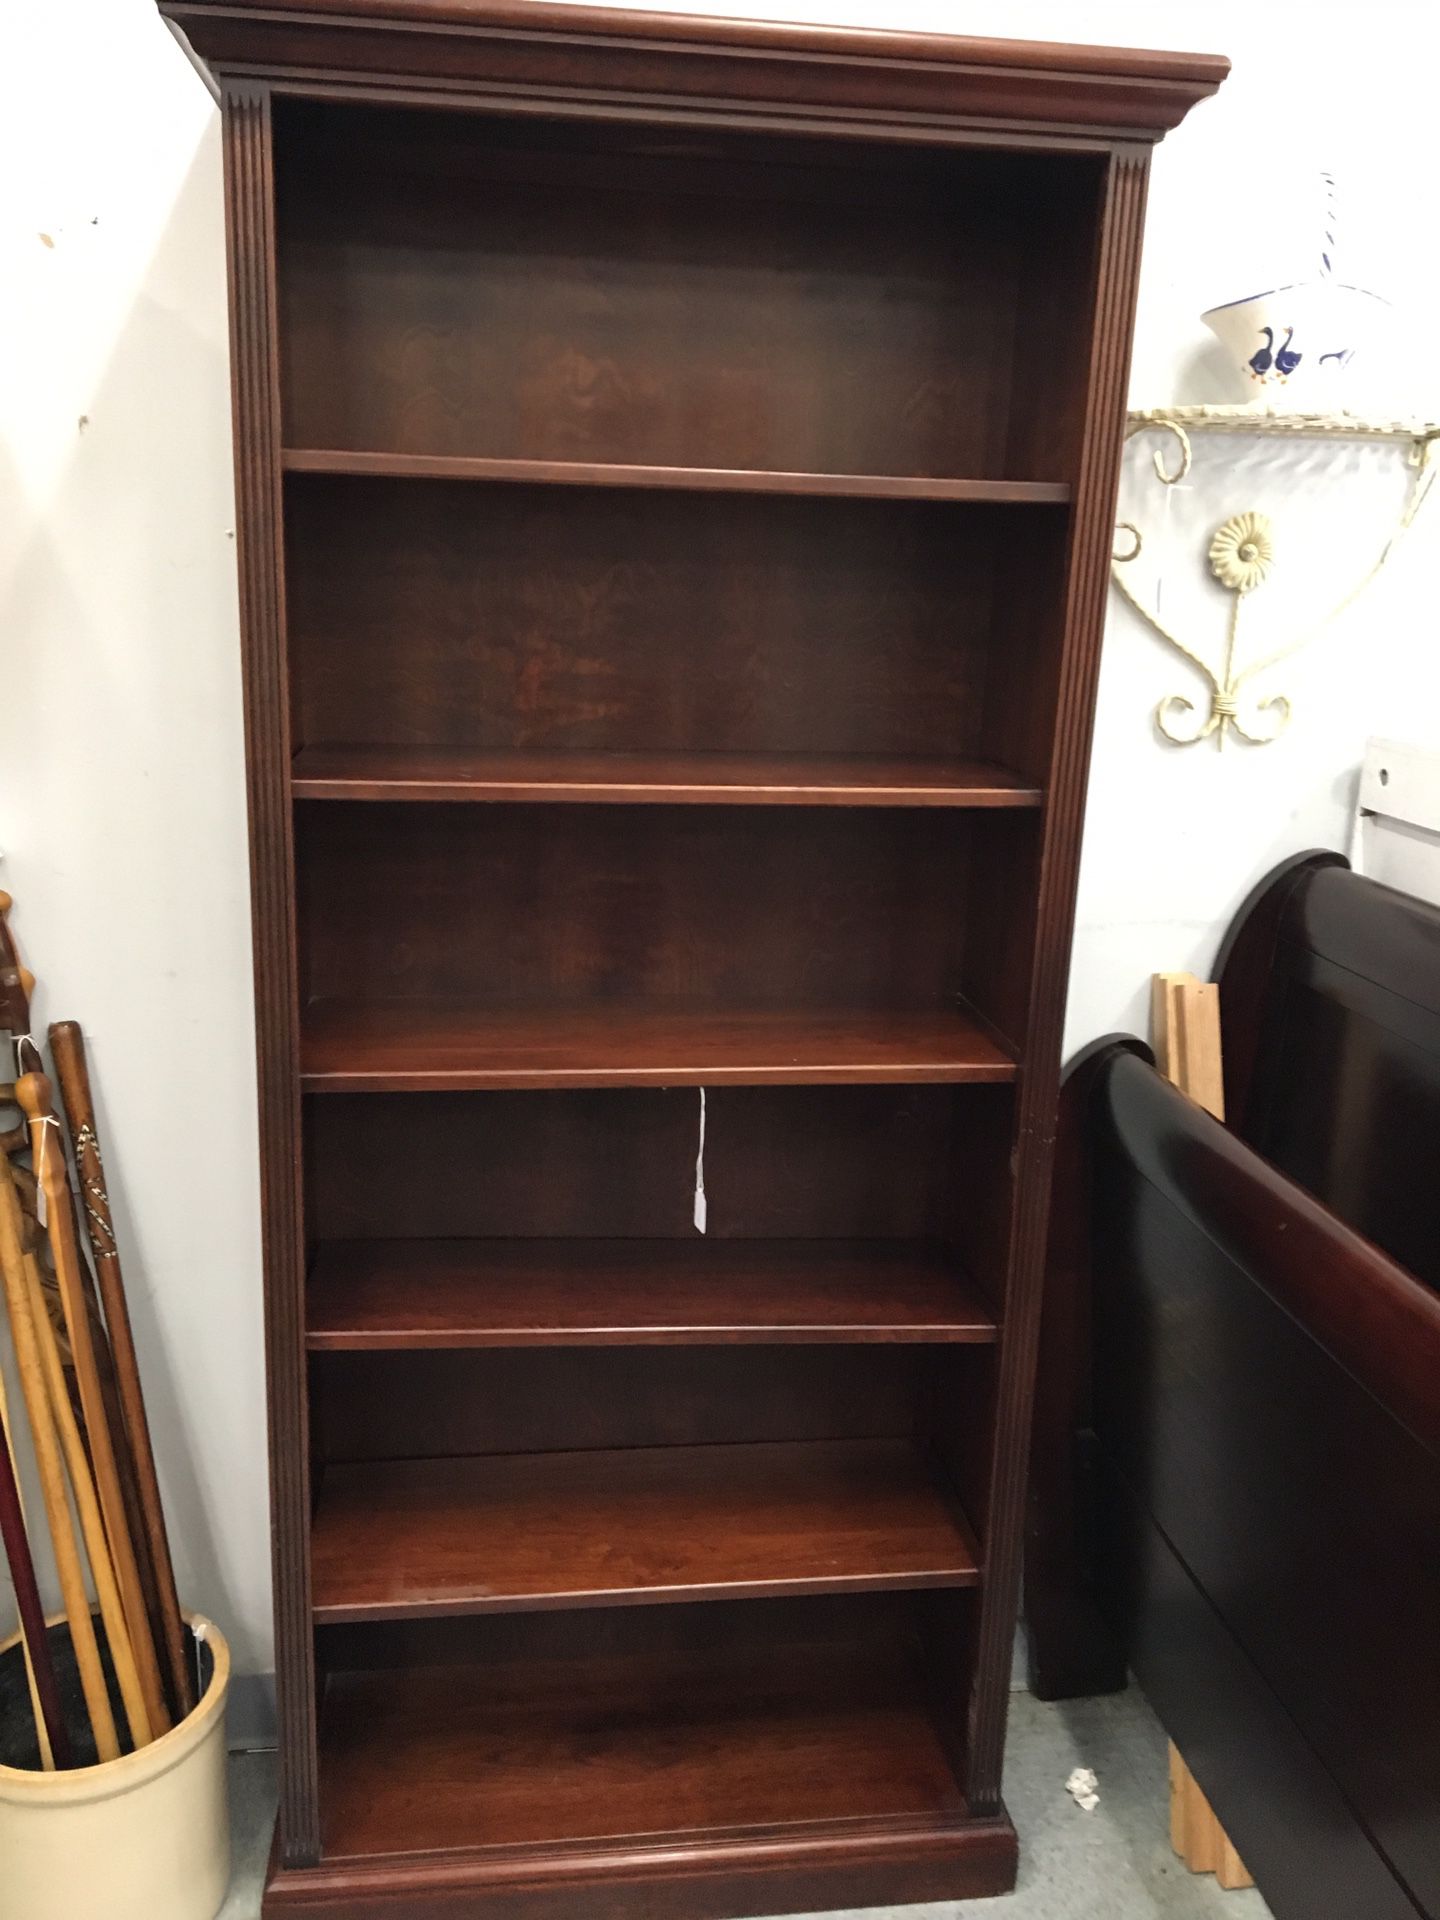 Bookcase solid wood adjustable shelves